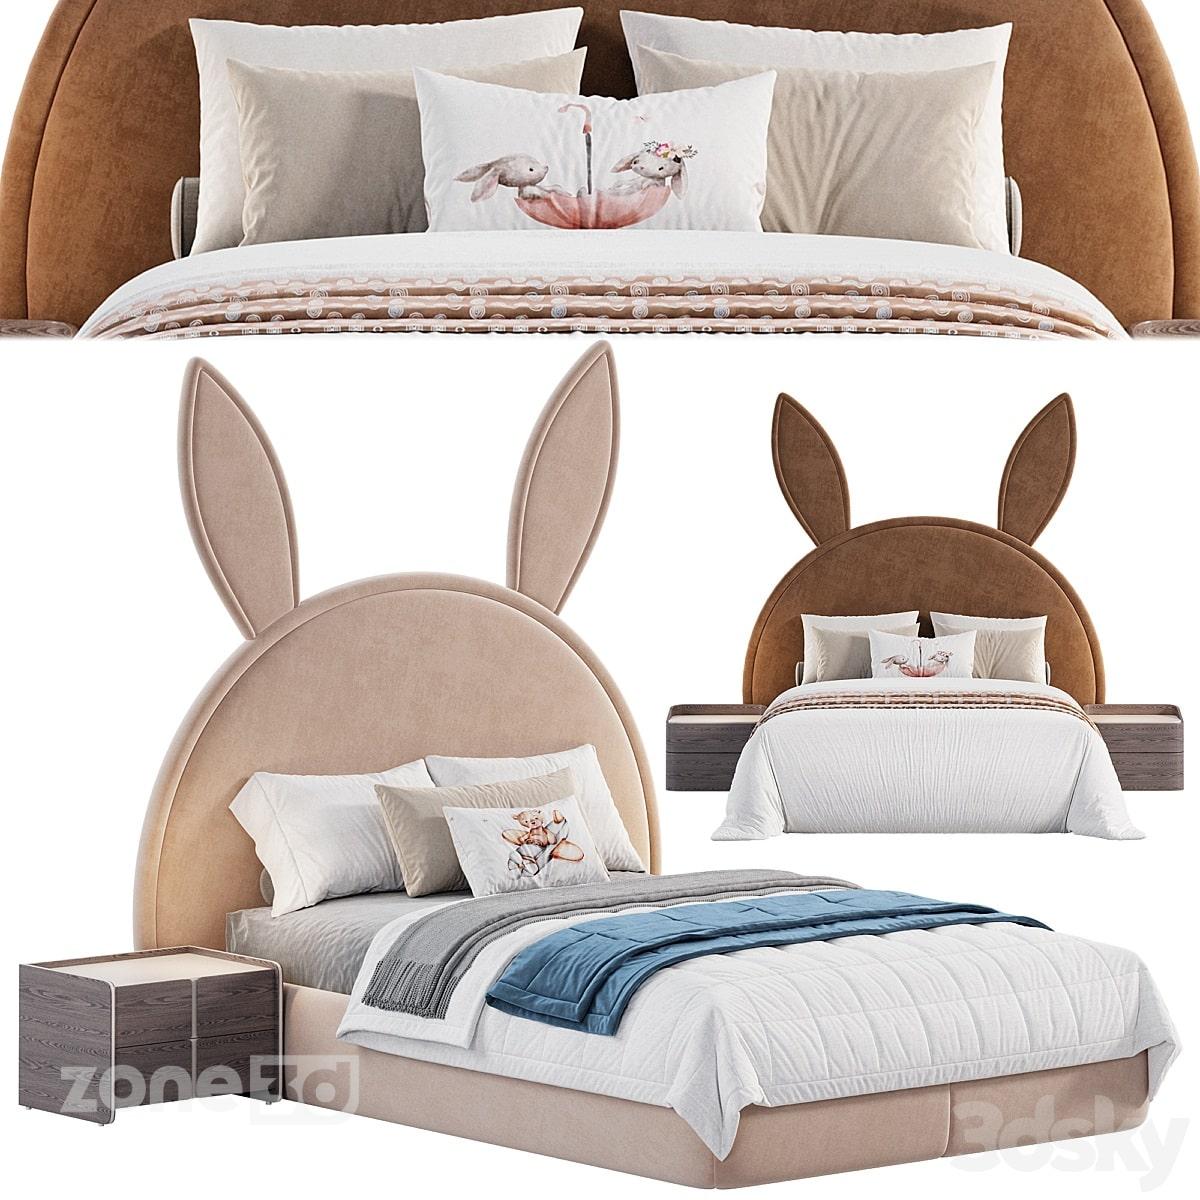 آبجکت تخت خواب پارچه ای مدرن اتاق کودک با تاج عروسکی به همراه میز پاتختی مدل Bunny bed